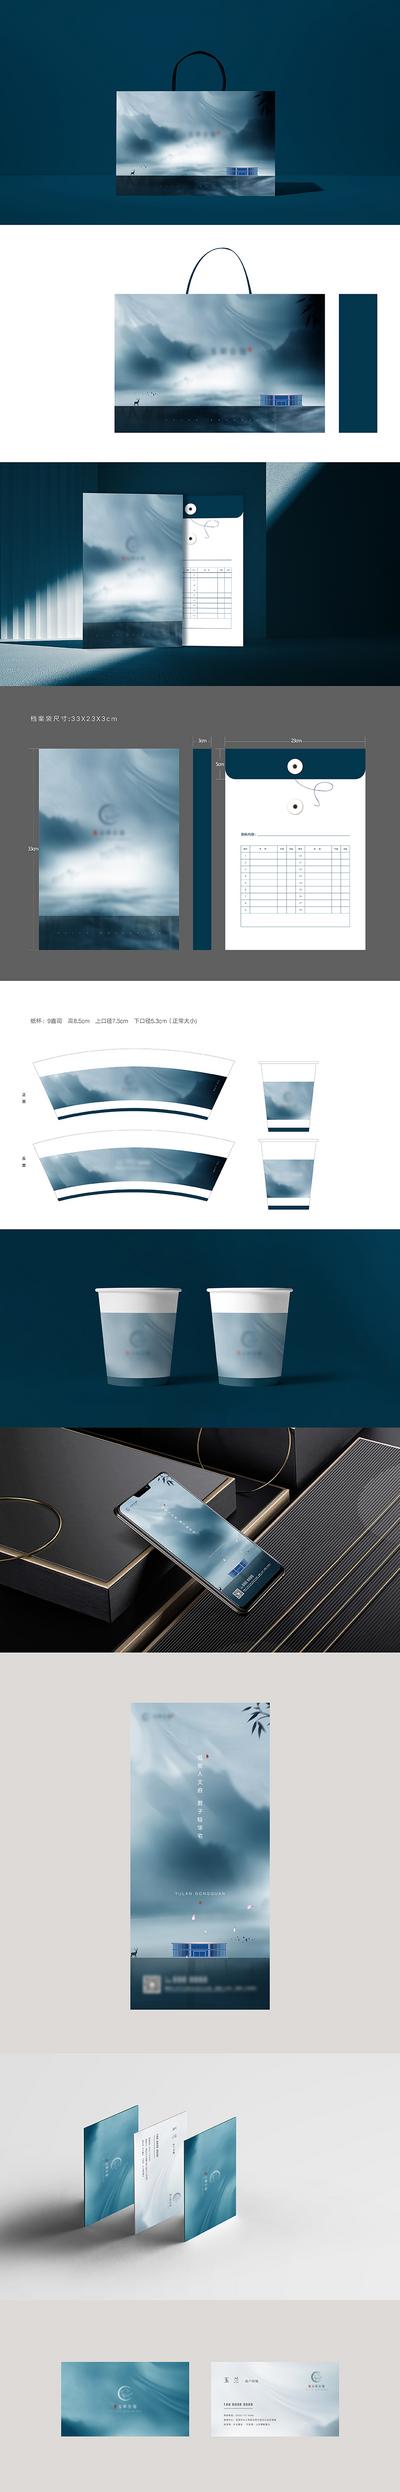 南门网 提报 提案 房地产 VI logo设计 新中式 意境 大气 档案袋 手提袋 纸杯